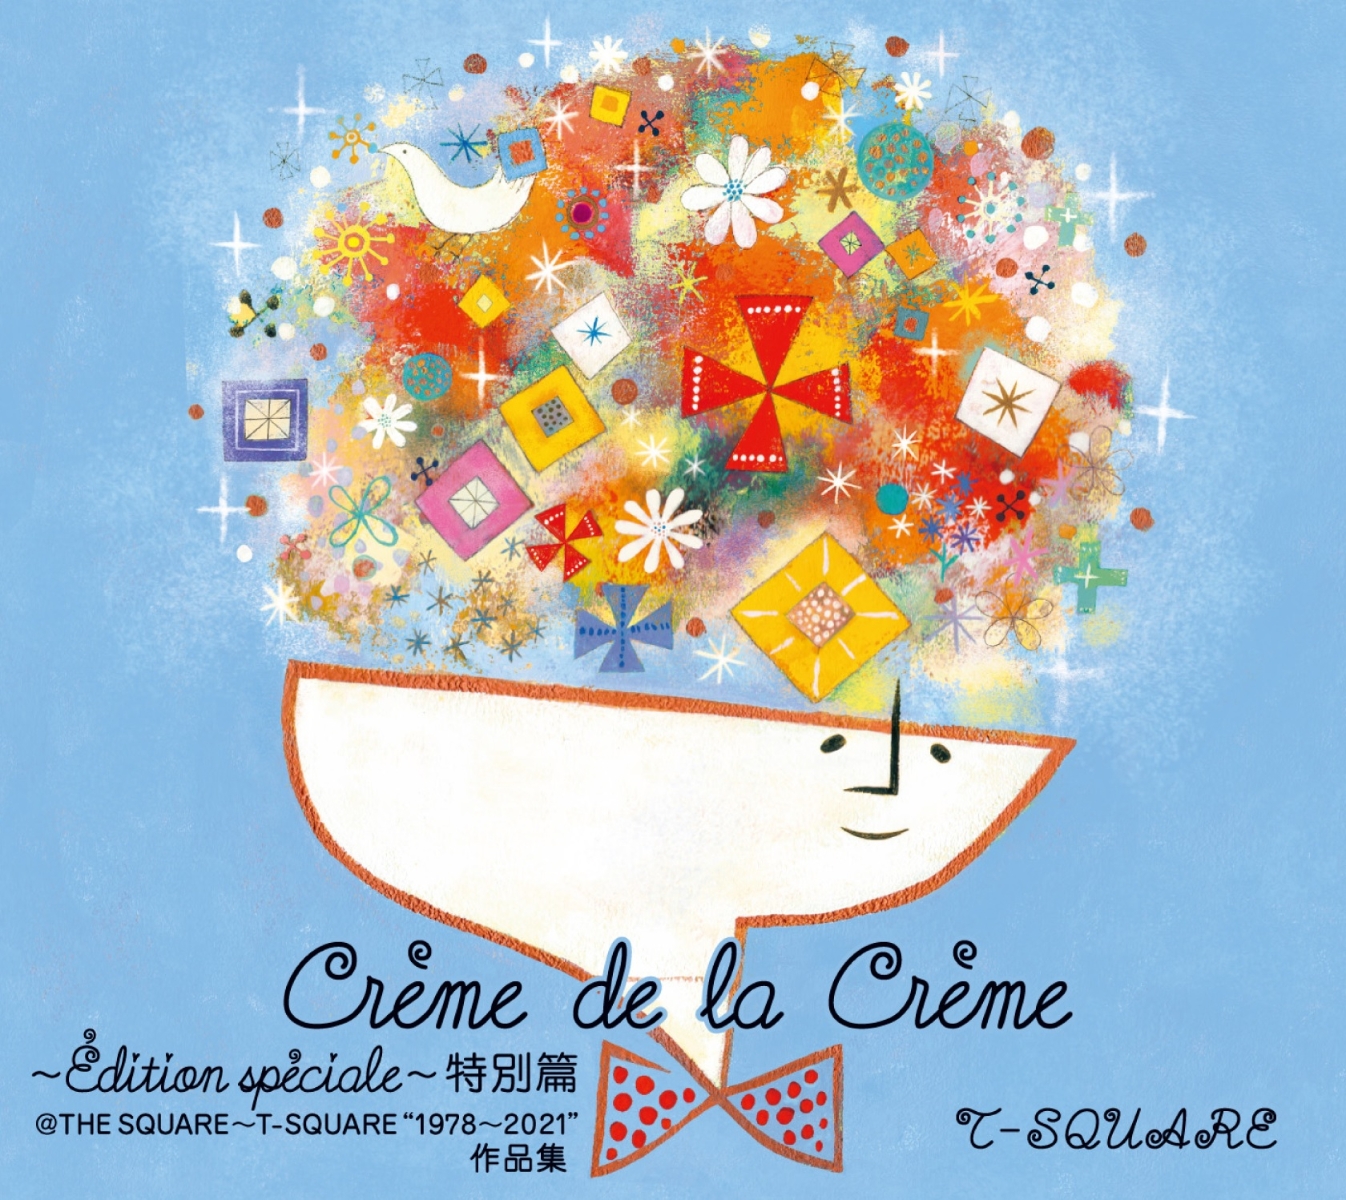 Creme de la Creme 〜Edition speciale〜 特別篇@THE SQUARE〜T-SQUARE ”1978〜2021”作品集 (完全生産限定盤 6CD＋Blu-ray)画像